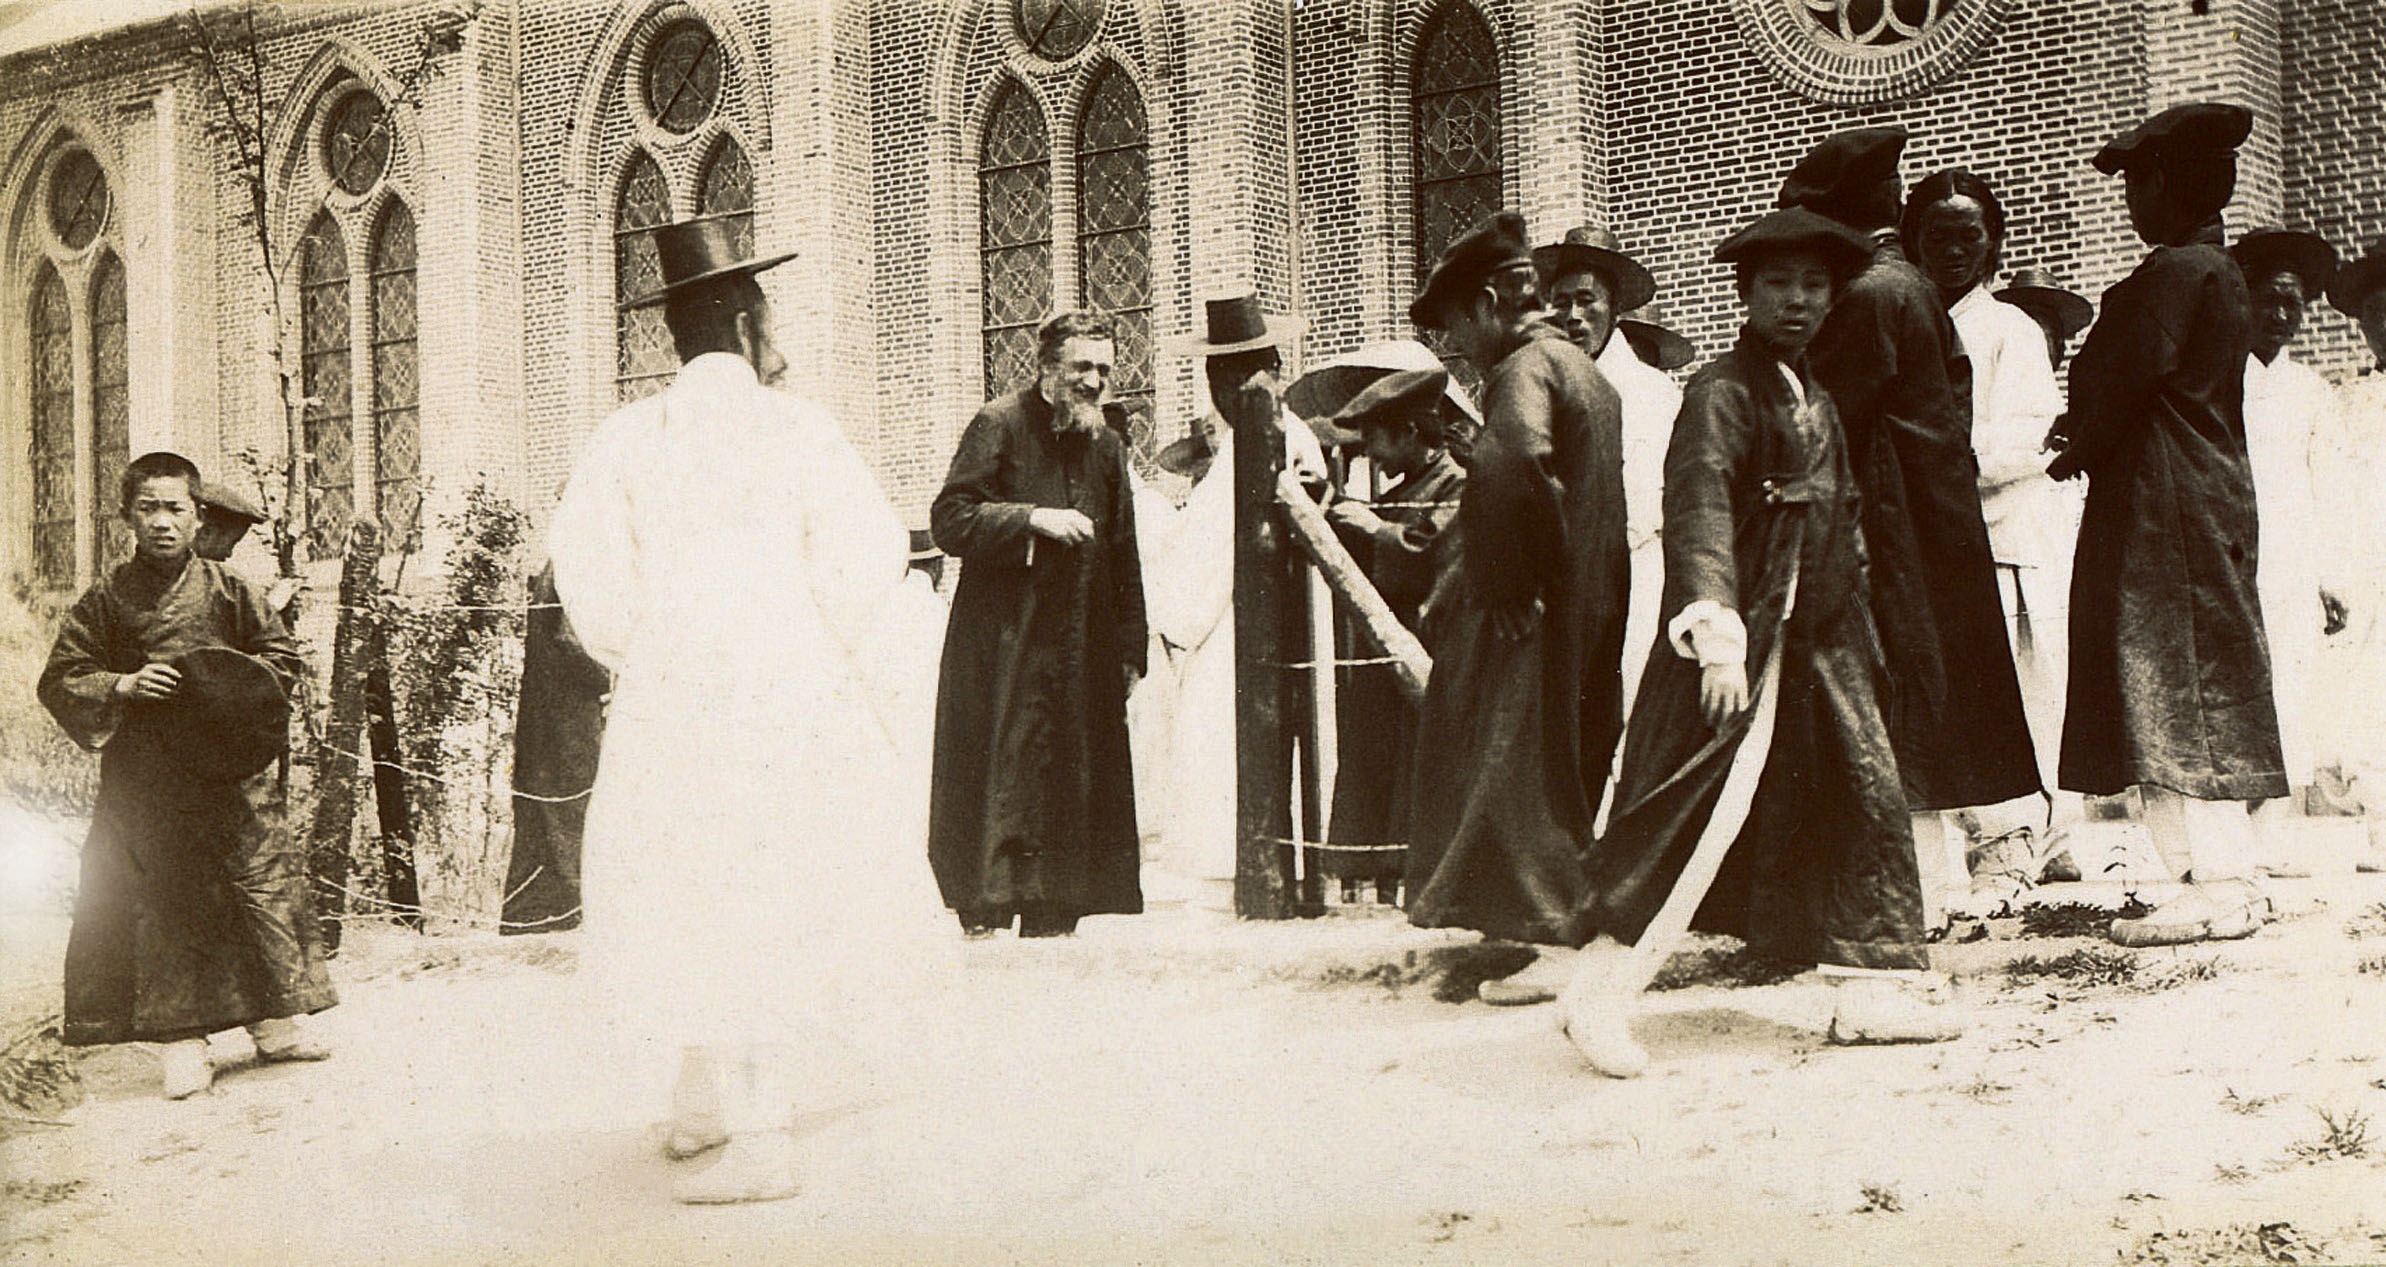 용산 예수성심신학교(1887~1942) (2)의 관련된 이미지 입니다.